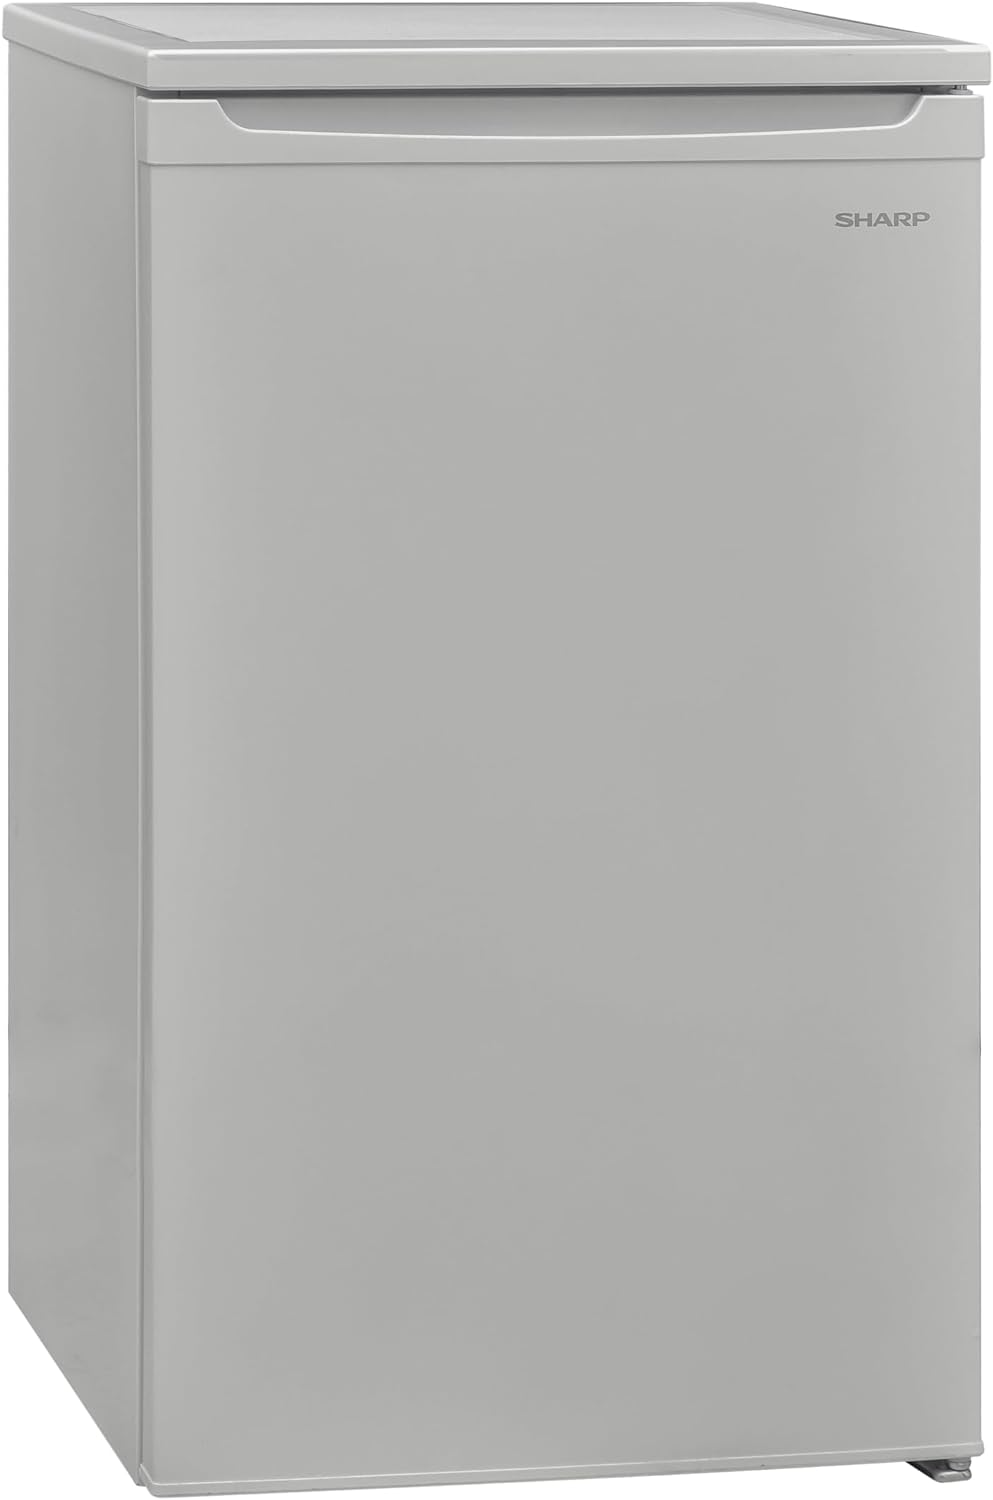 Sharp SJ - UF088M4S - EN, 48 cm, Freestanding, Under Counter Fridge, Freezer compartment, Auto Fridge Defrost, Reversible Doors, Silver Colour - Amazing Gadgets Outlet